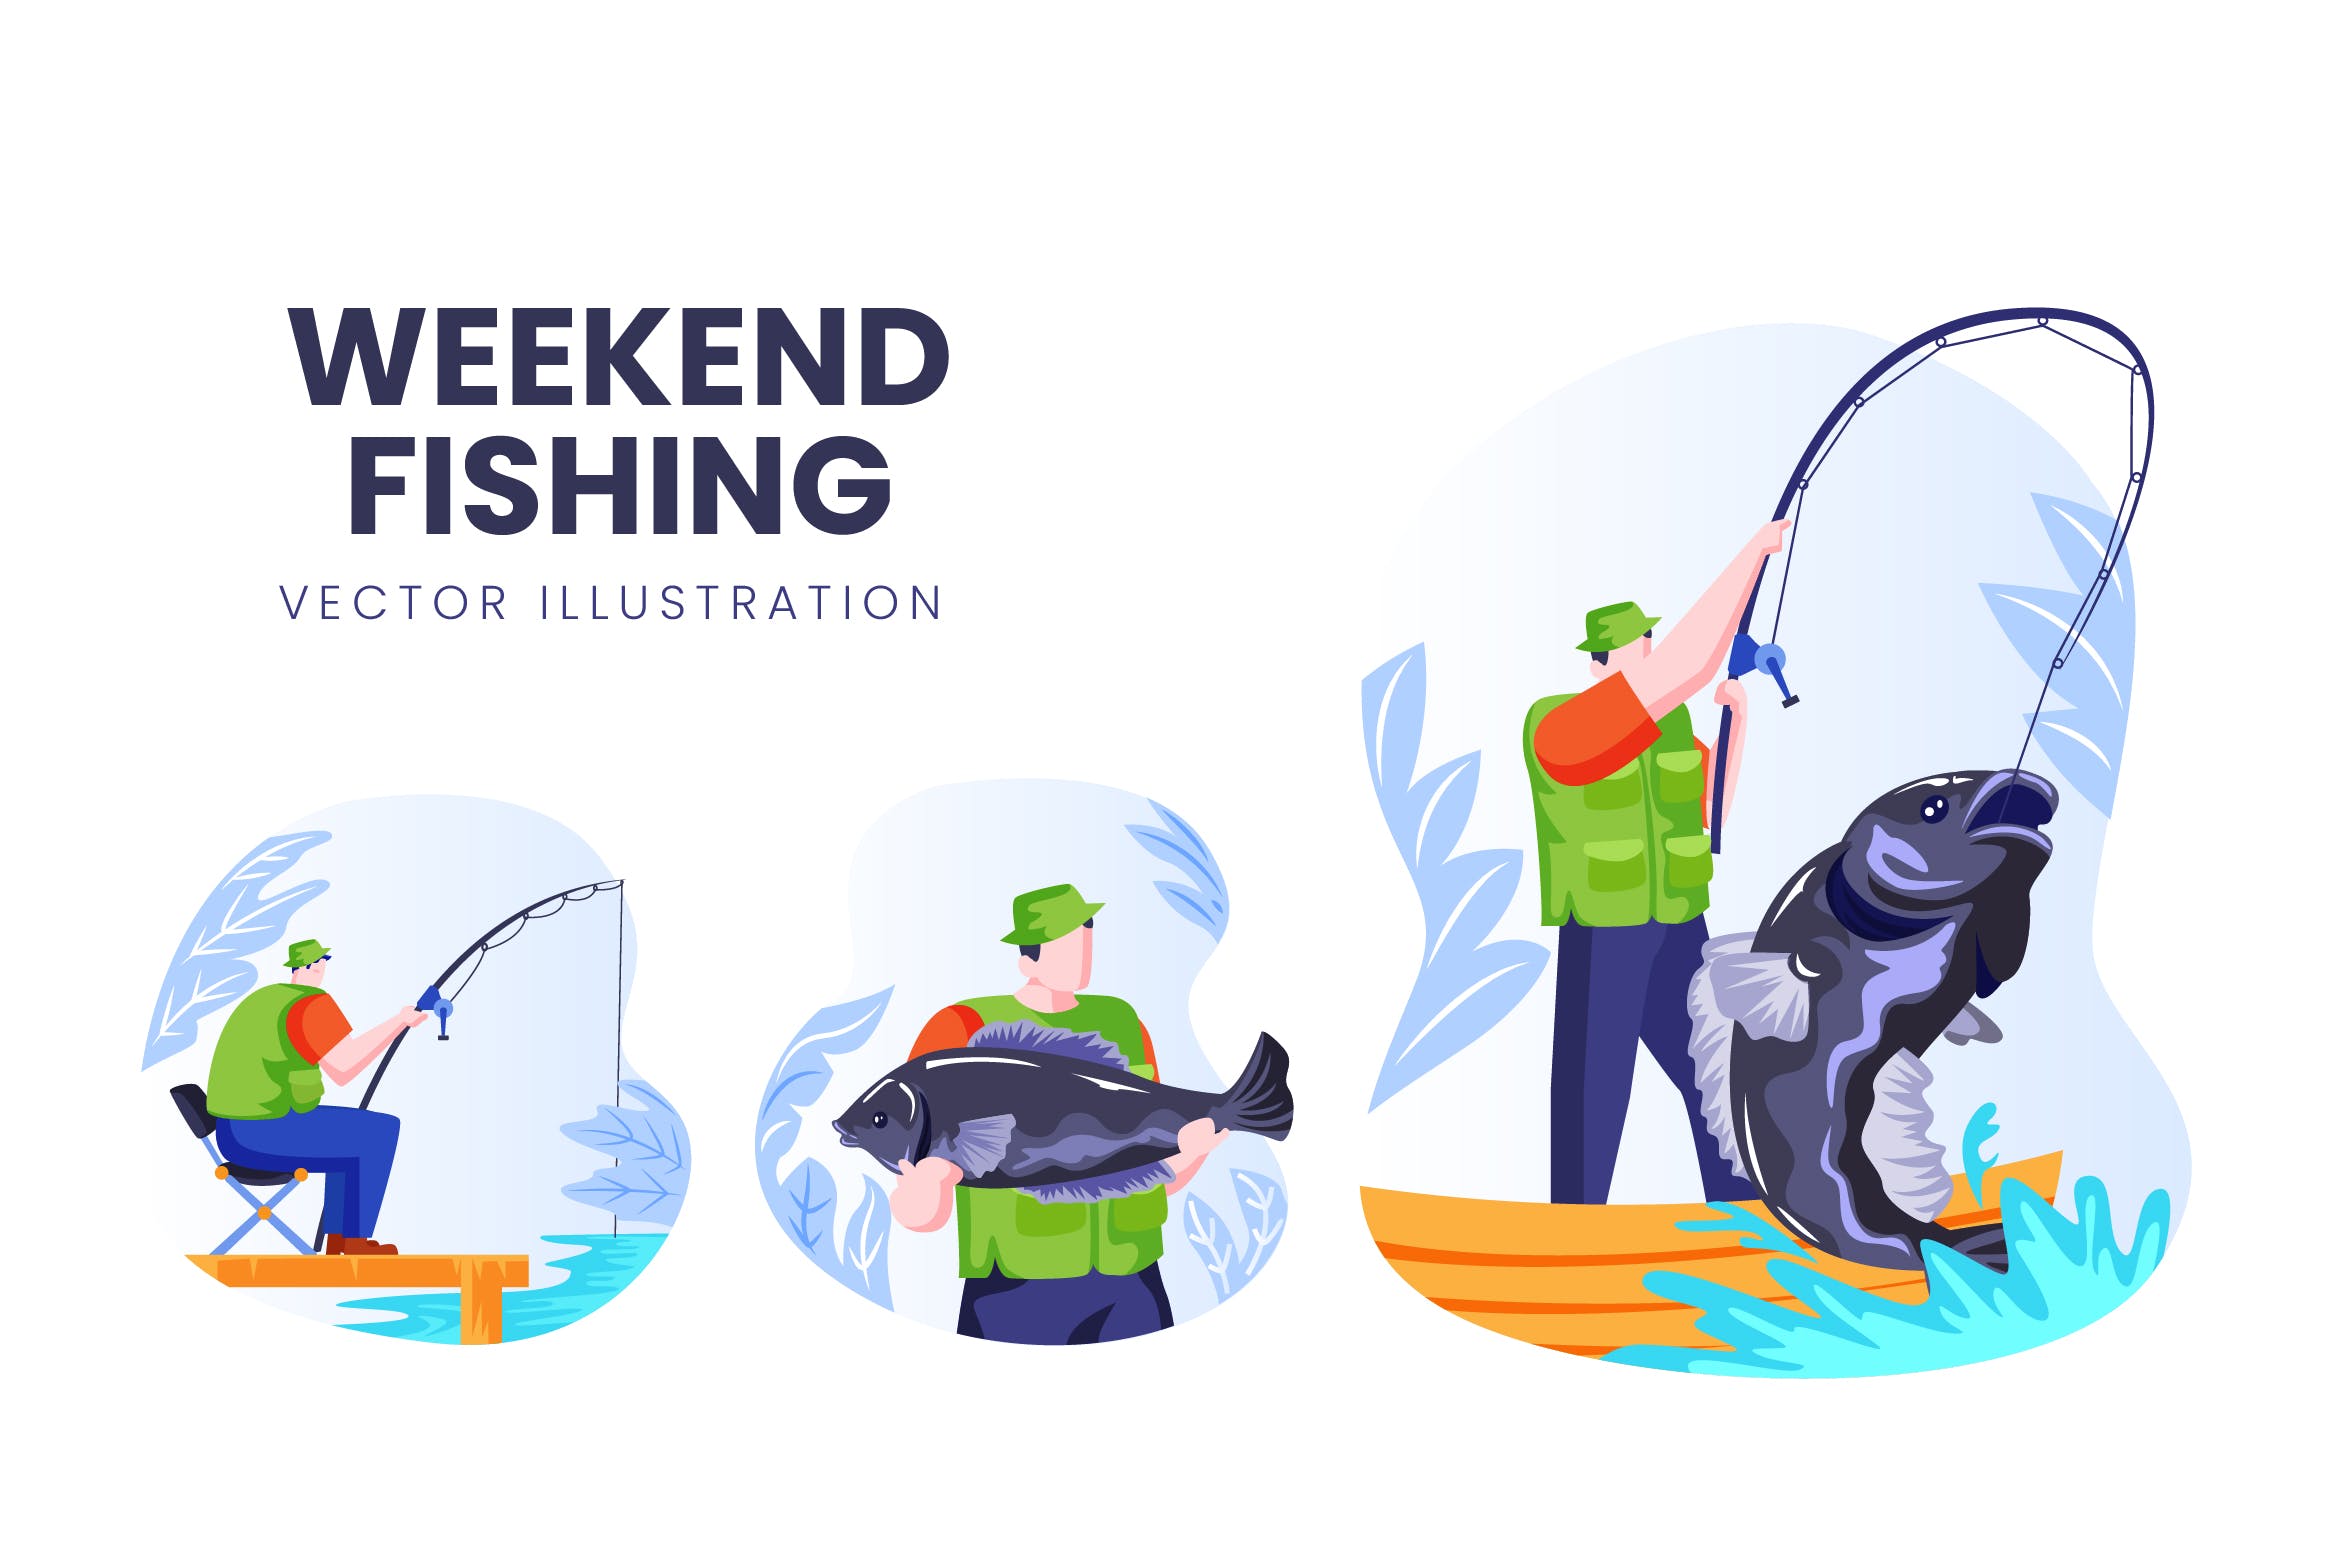 钓鱼爱好者人物形象素材库精选手绘插画矢量素材 Weekend Fishing Vector Character Set插图